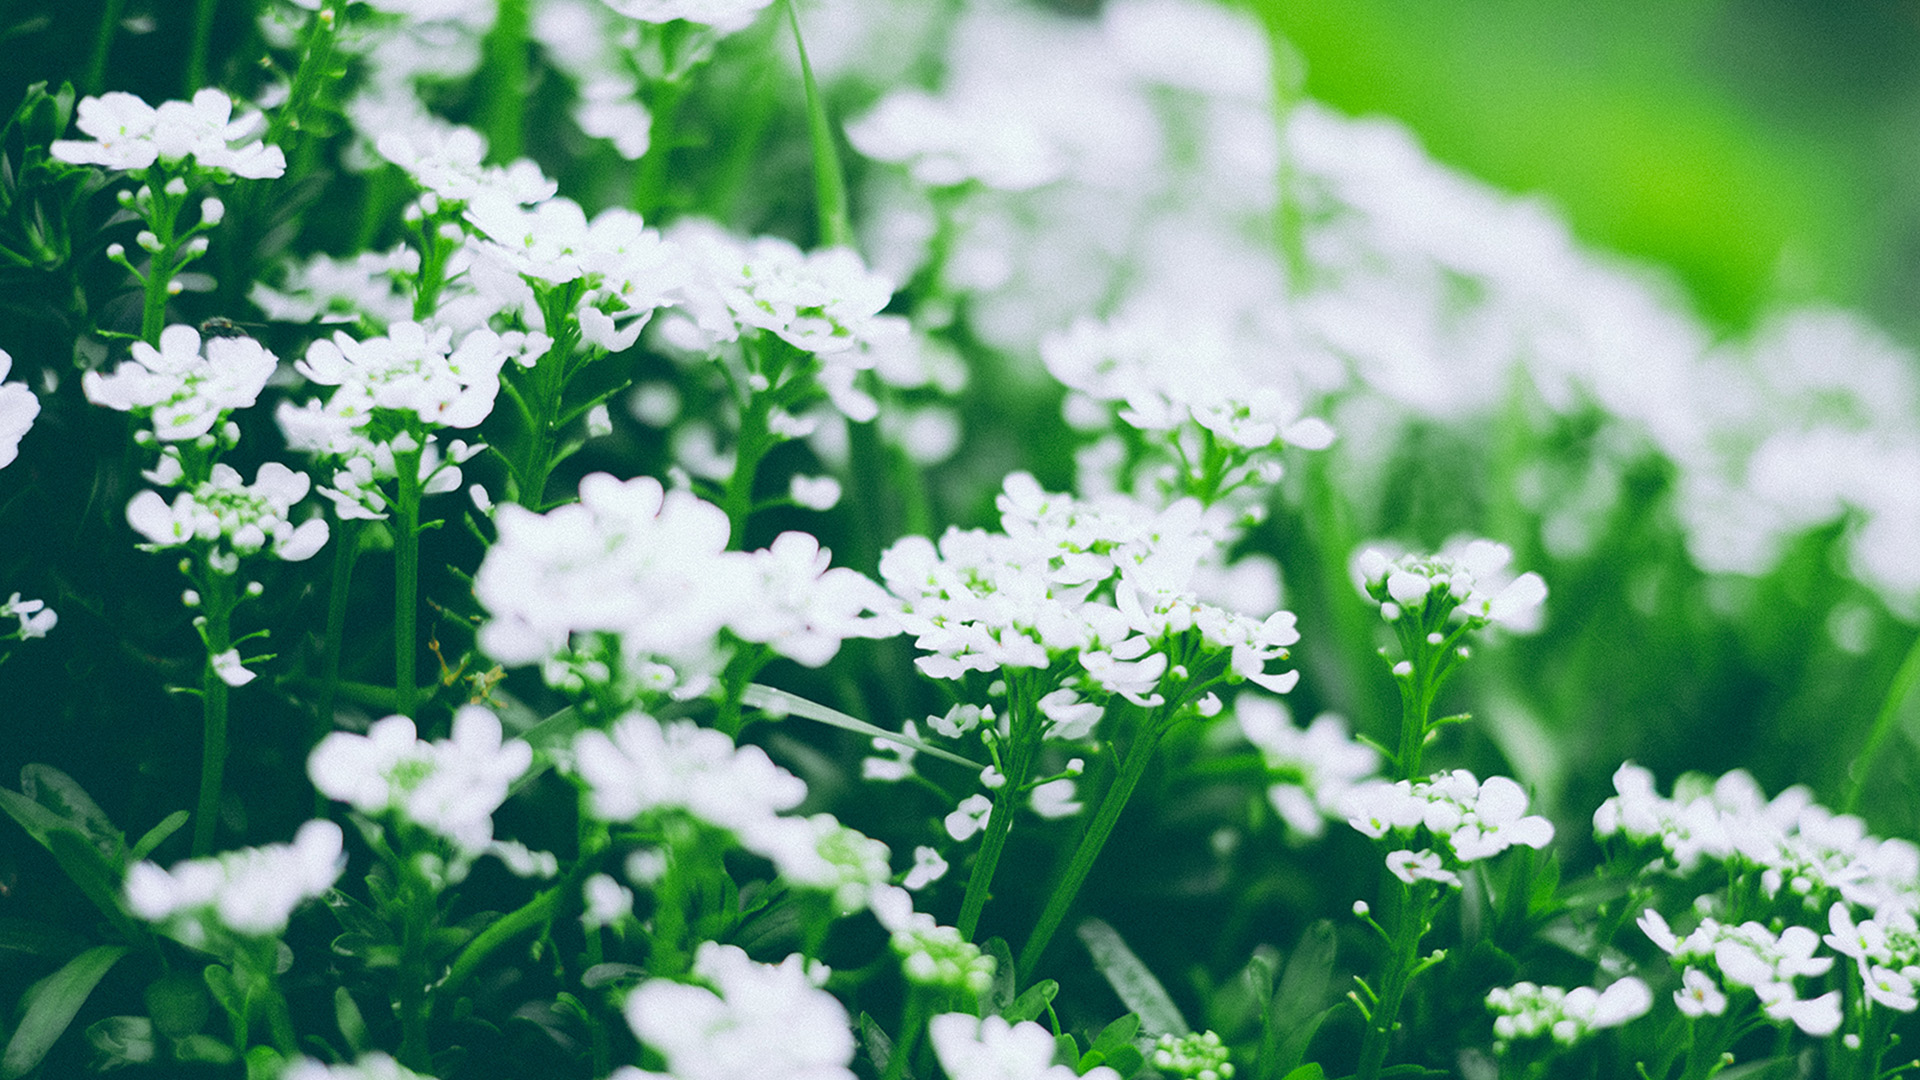 白色花朵 花海 绿色护眼 唯美清新植物壁纸 花卉壁纸 壁纸下载 彼岸桌面